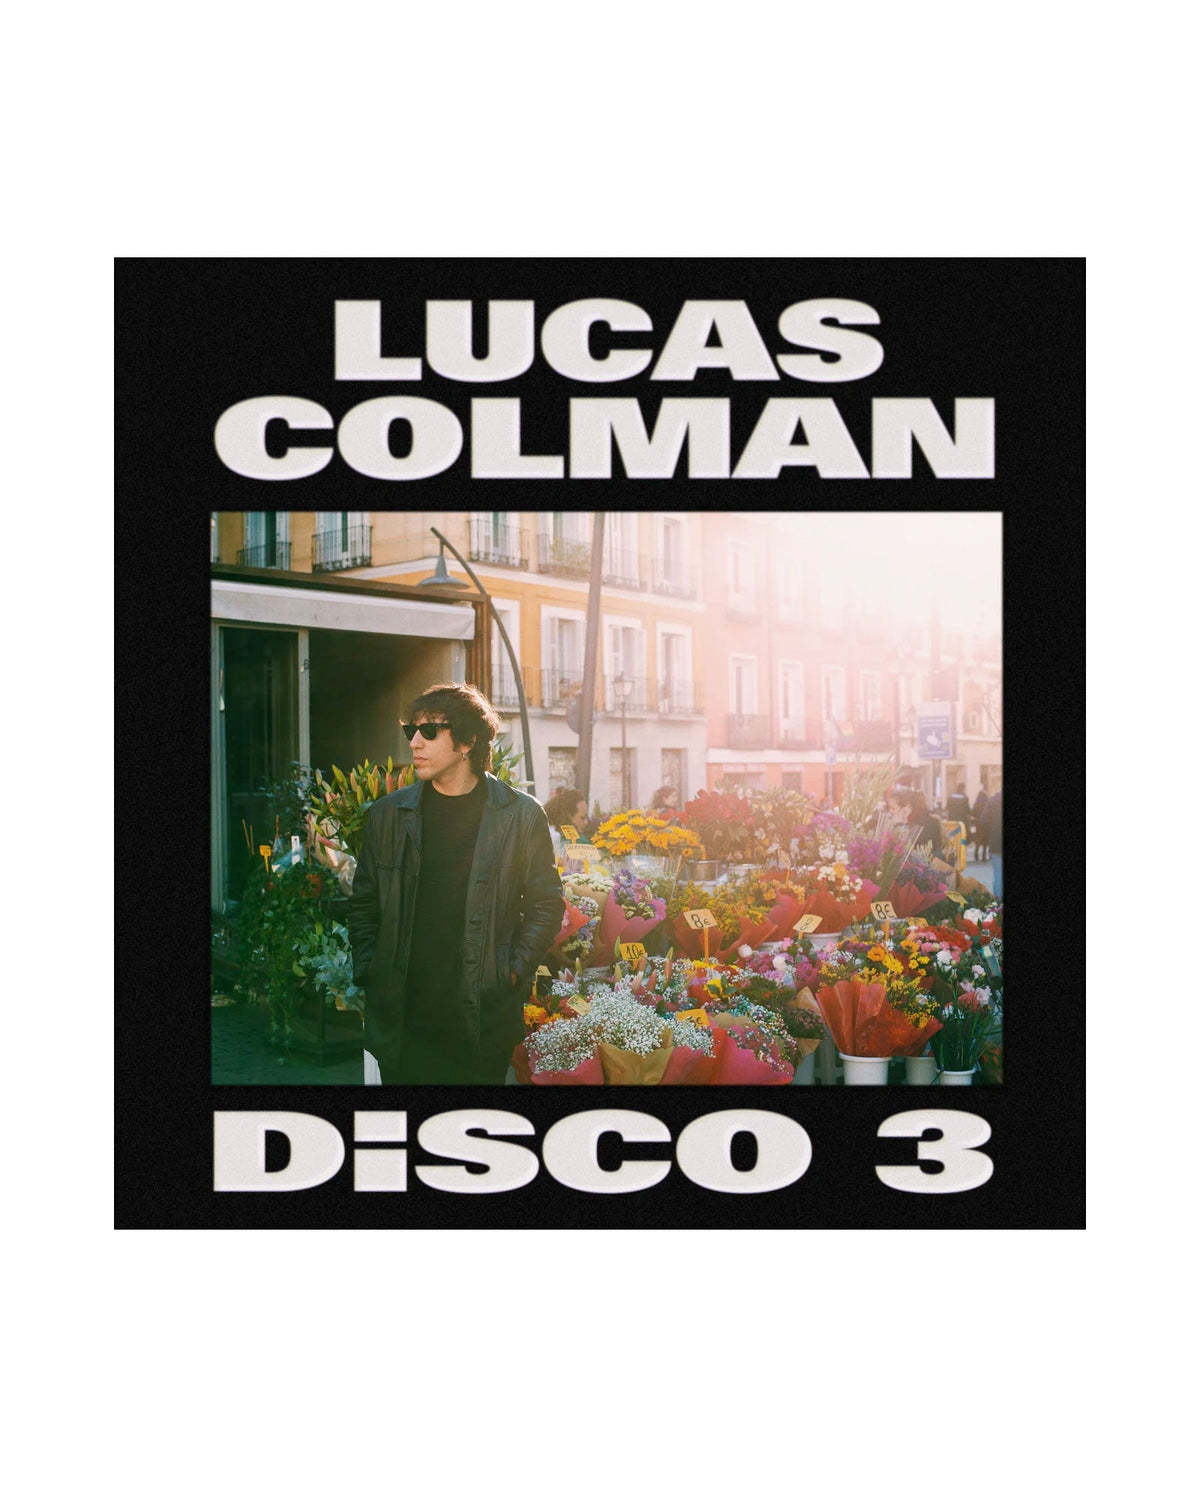 Lucas Colman - LP Vinilo + CD "Disco 3" - D2fy · Rocktud - Metales Preciosos